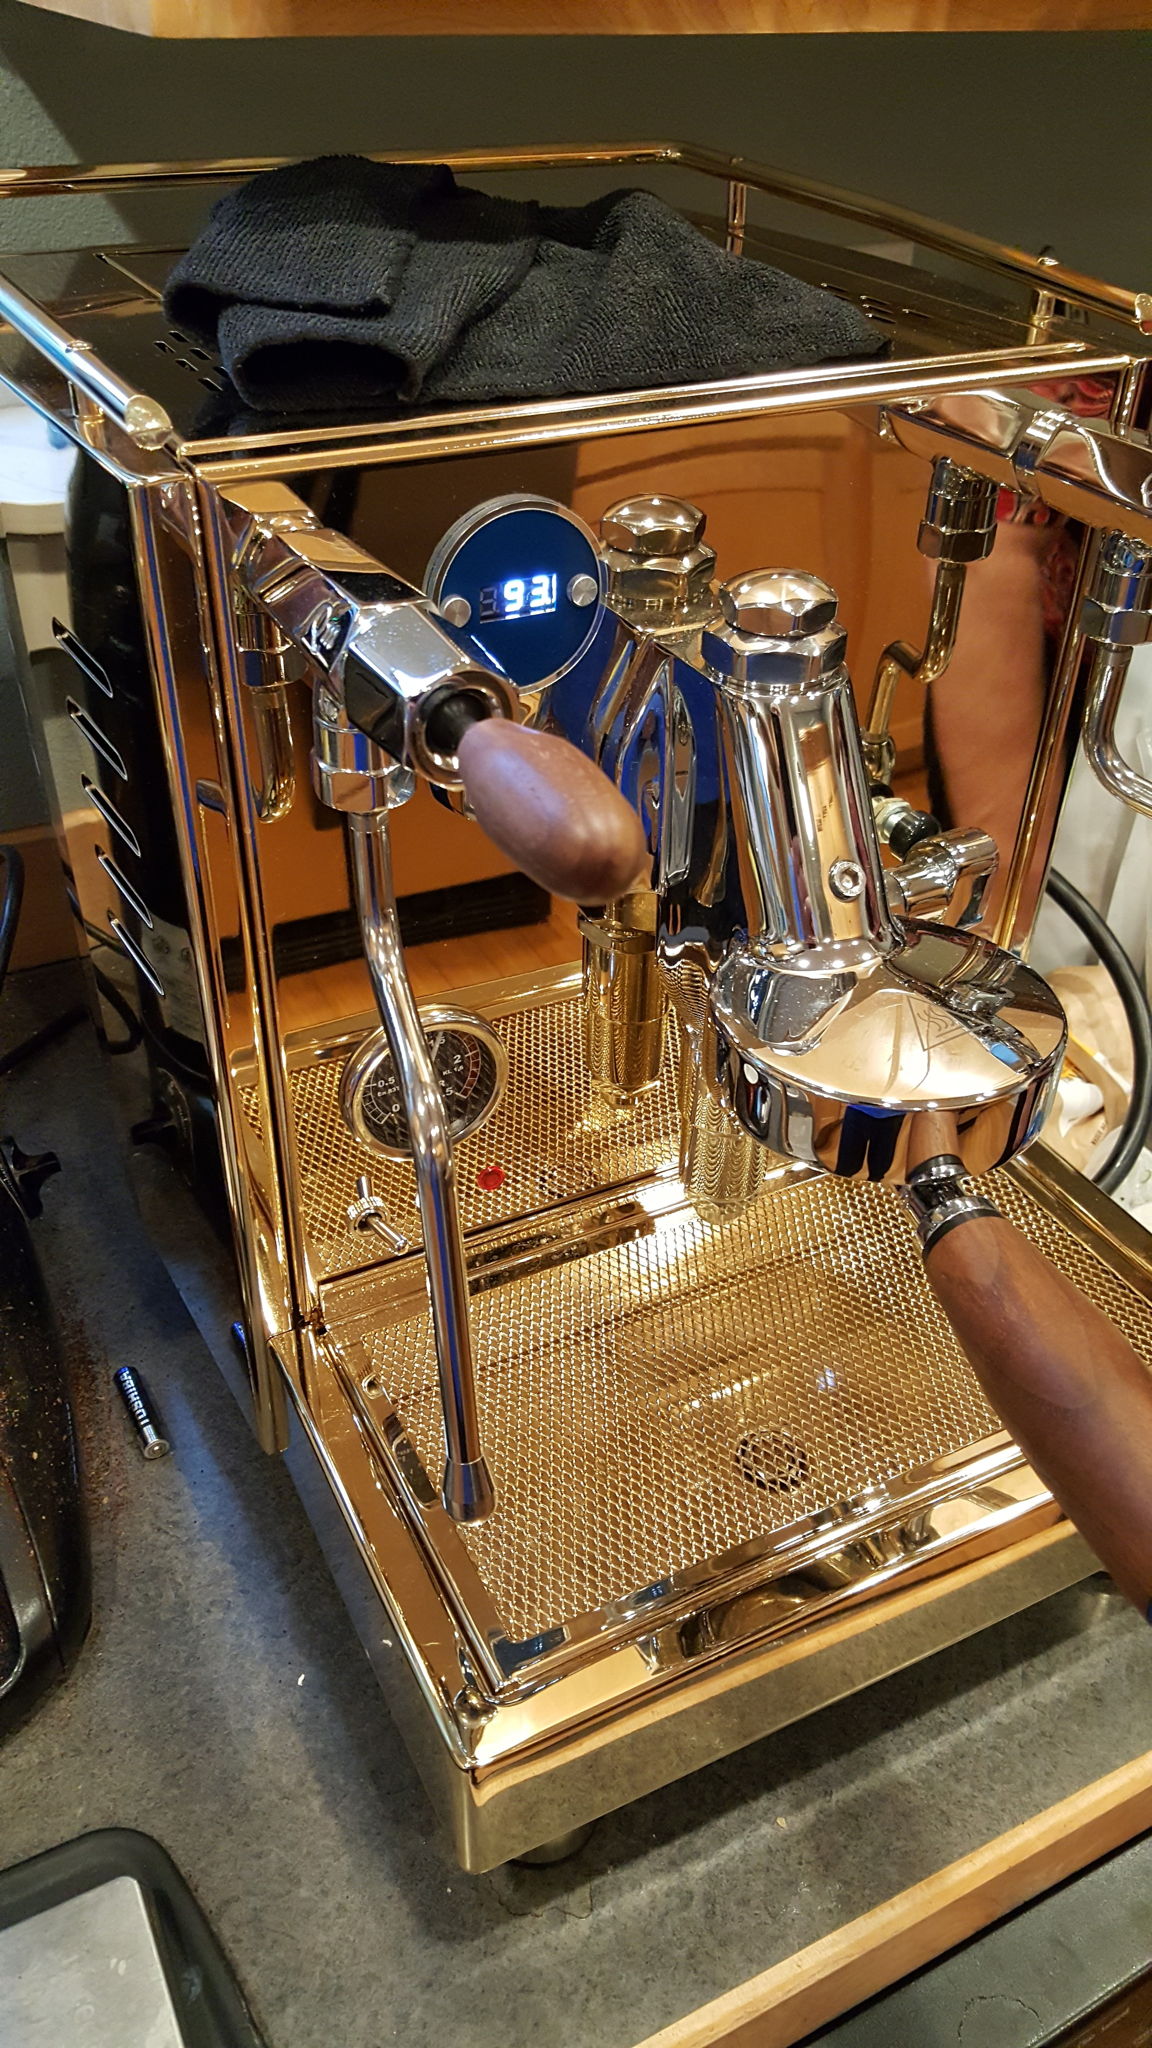 Quickmill Lucca M-58 espresso machine